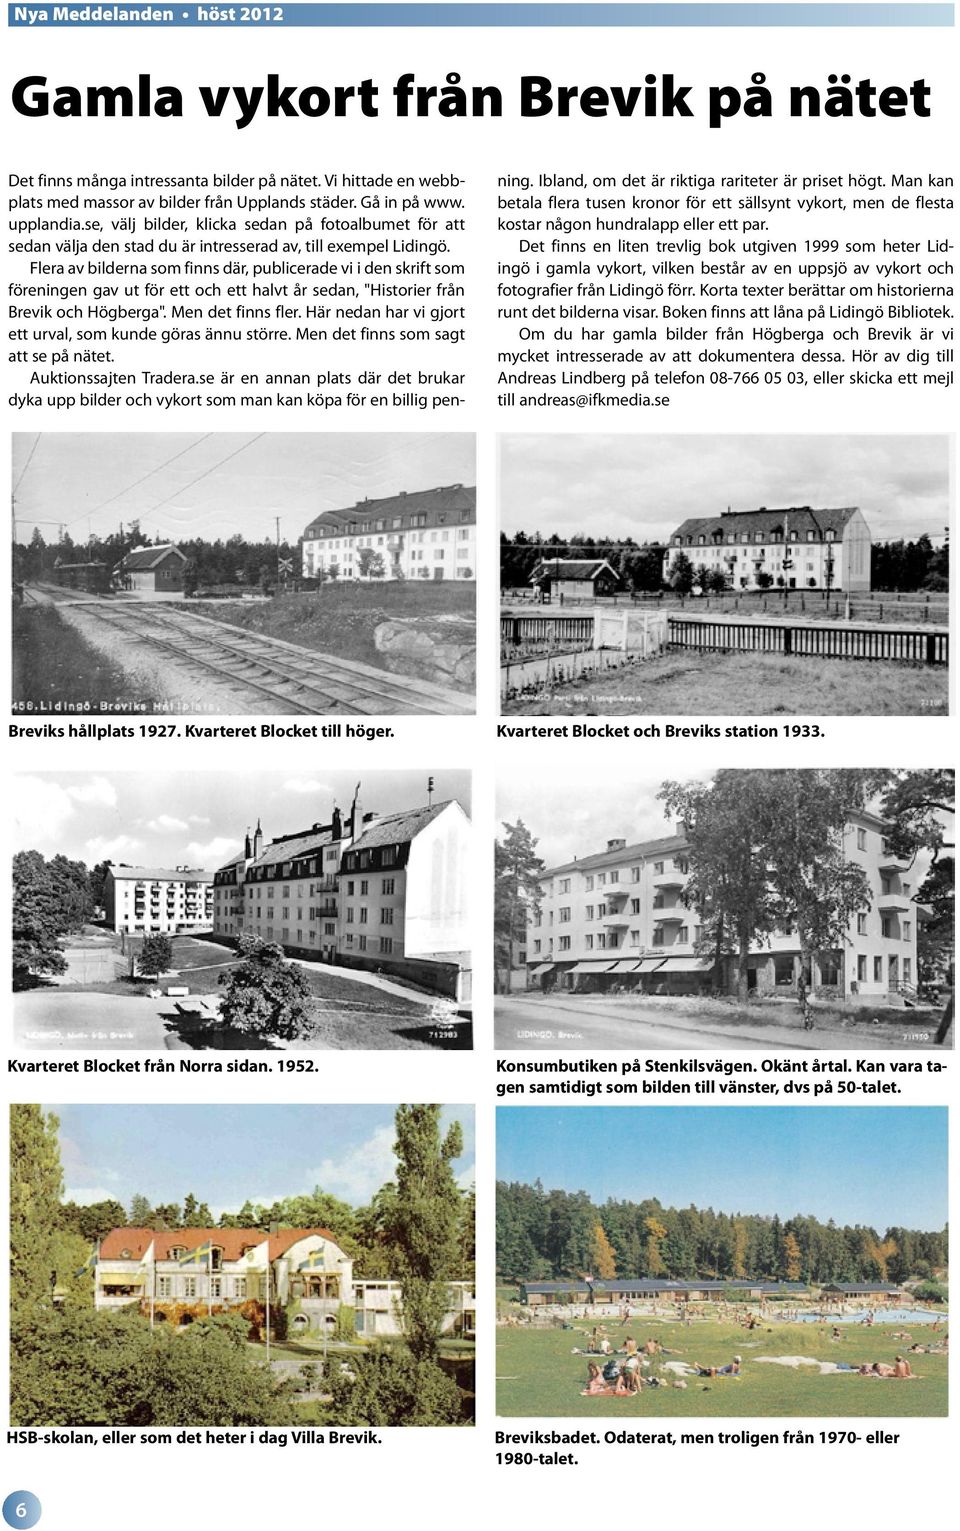 Flera av bilderna som finns där, publicerade vi i den skrift som föreningen gav ut för ett och ett halvt år sedan, "Historier från Brevik och Högberga". Men det finns fler.